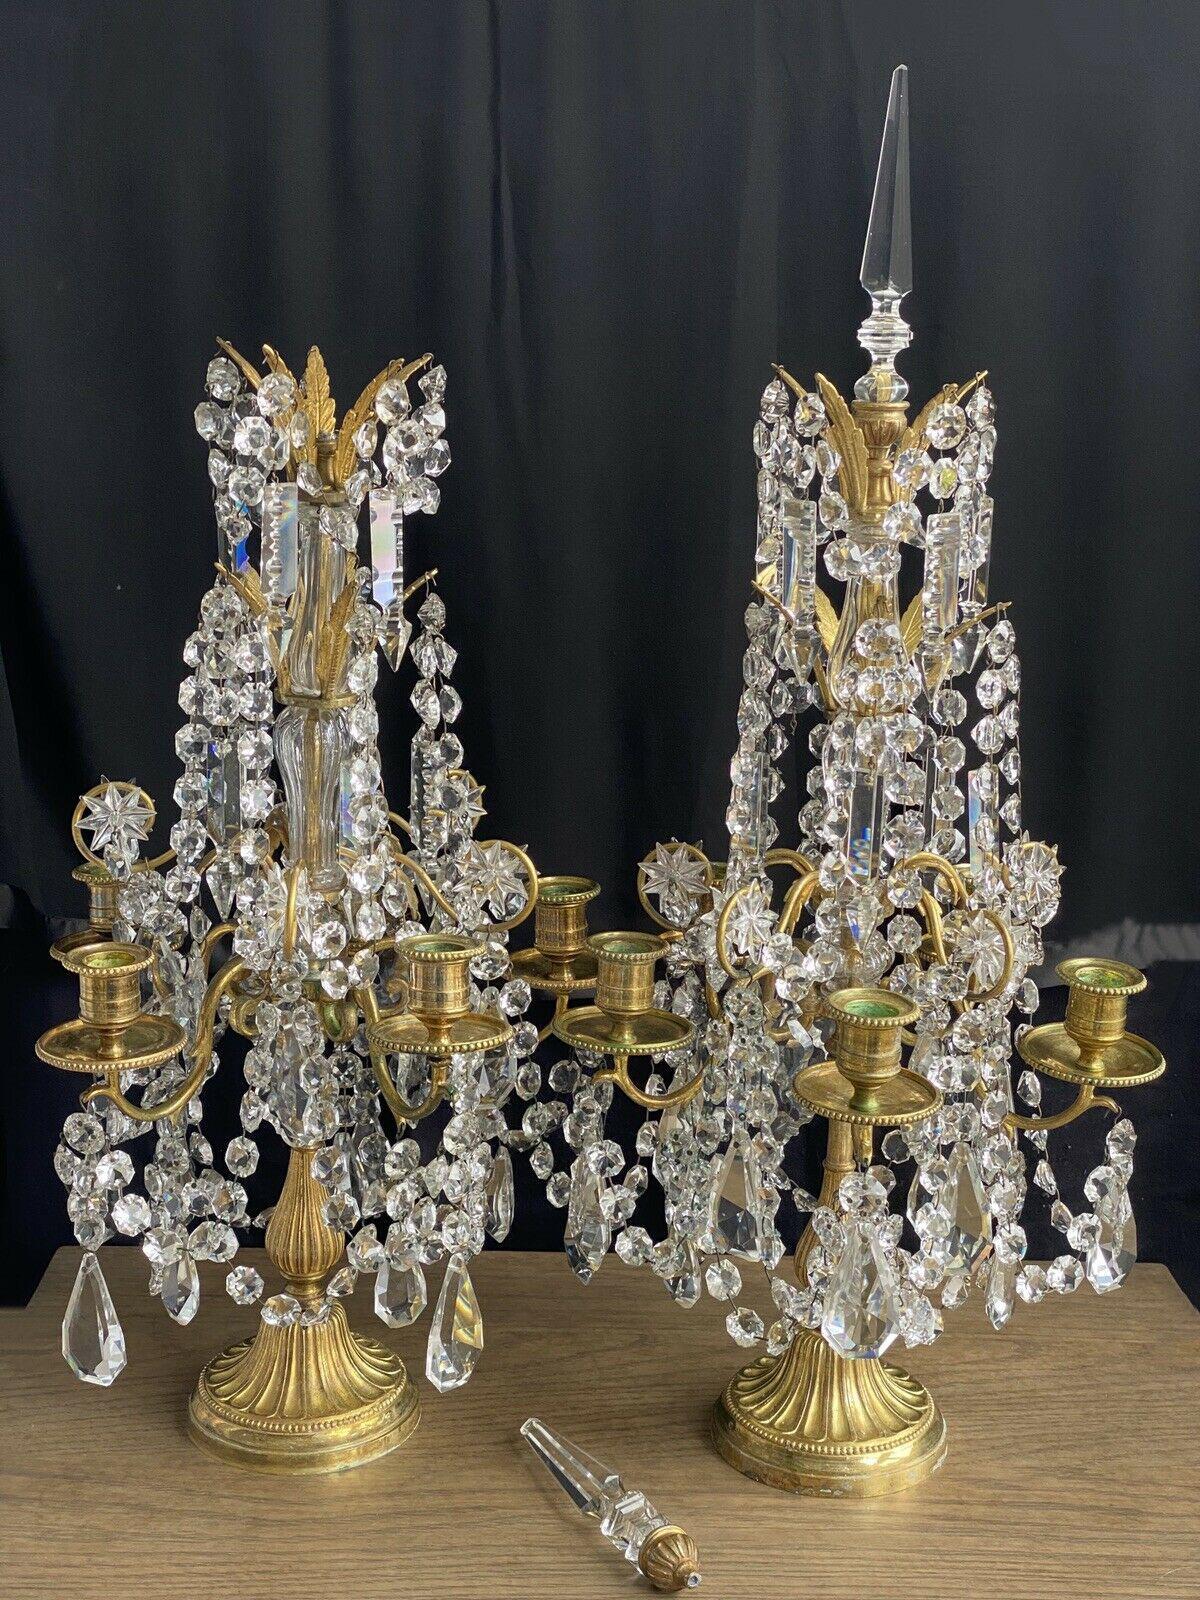 Paire de girandoles/ lampes de table/ candélabres en bronze doré et cristal taillé, attribuées à Baccarat, 19e siècle. Ultr haute qualité. Très détaillé. Acquisition de biens immobiliers en France.